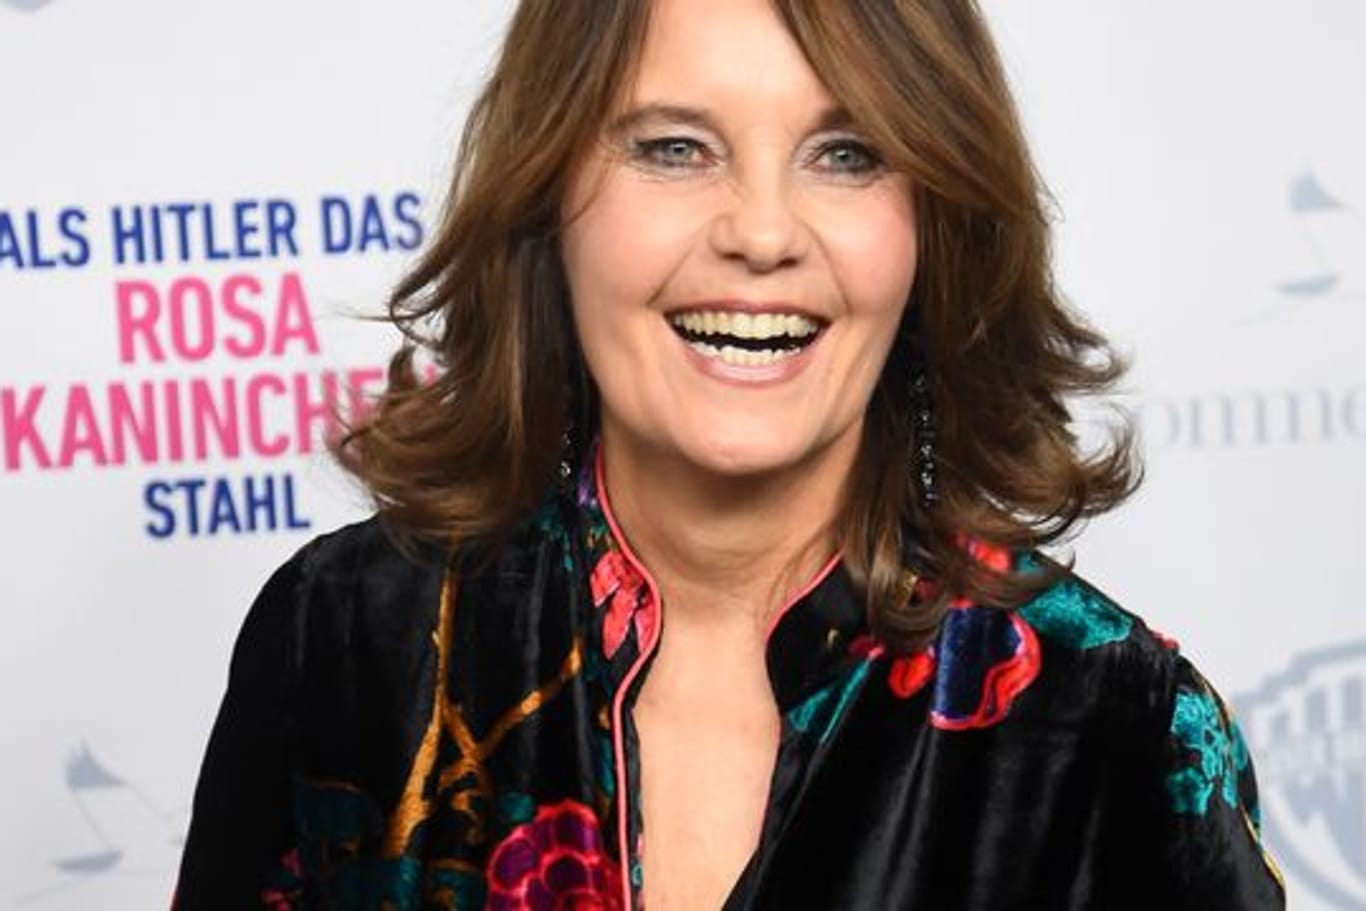 Regisseurin Caroline Link bei der Premiere ihres Films "Als Hitler das rosa Kaninchen stahl" 2019 in München.